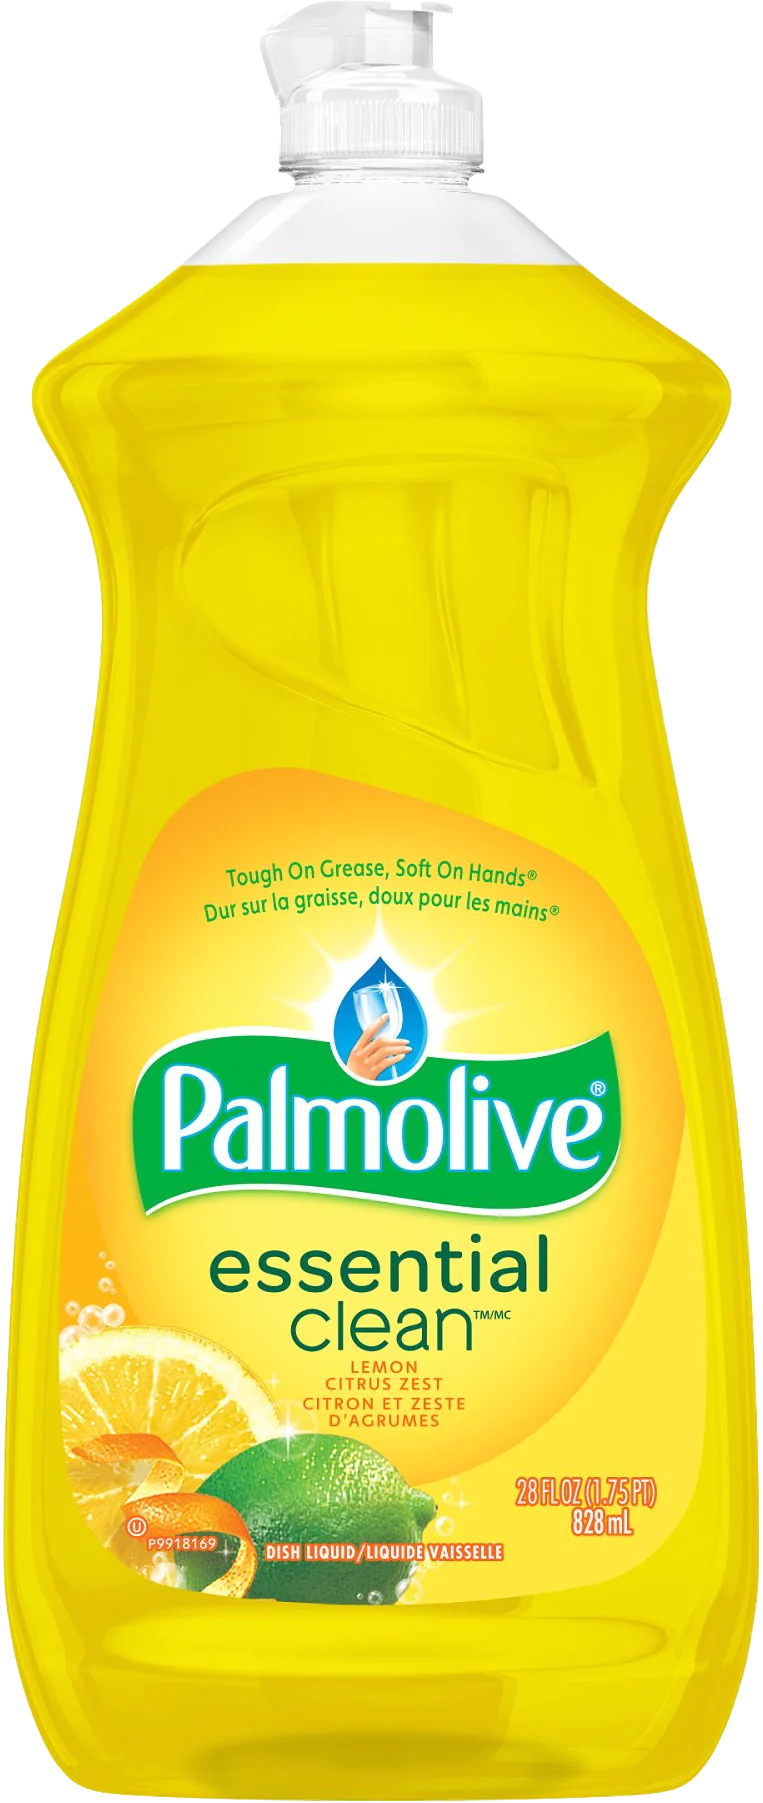 Palmolive Essential Clean Dish Washing Soap - Lemon Citrus Zest (828ml) - Quecan